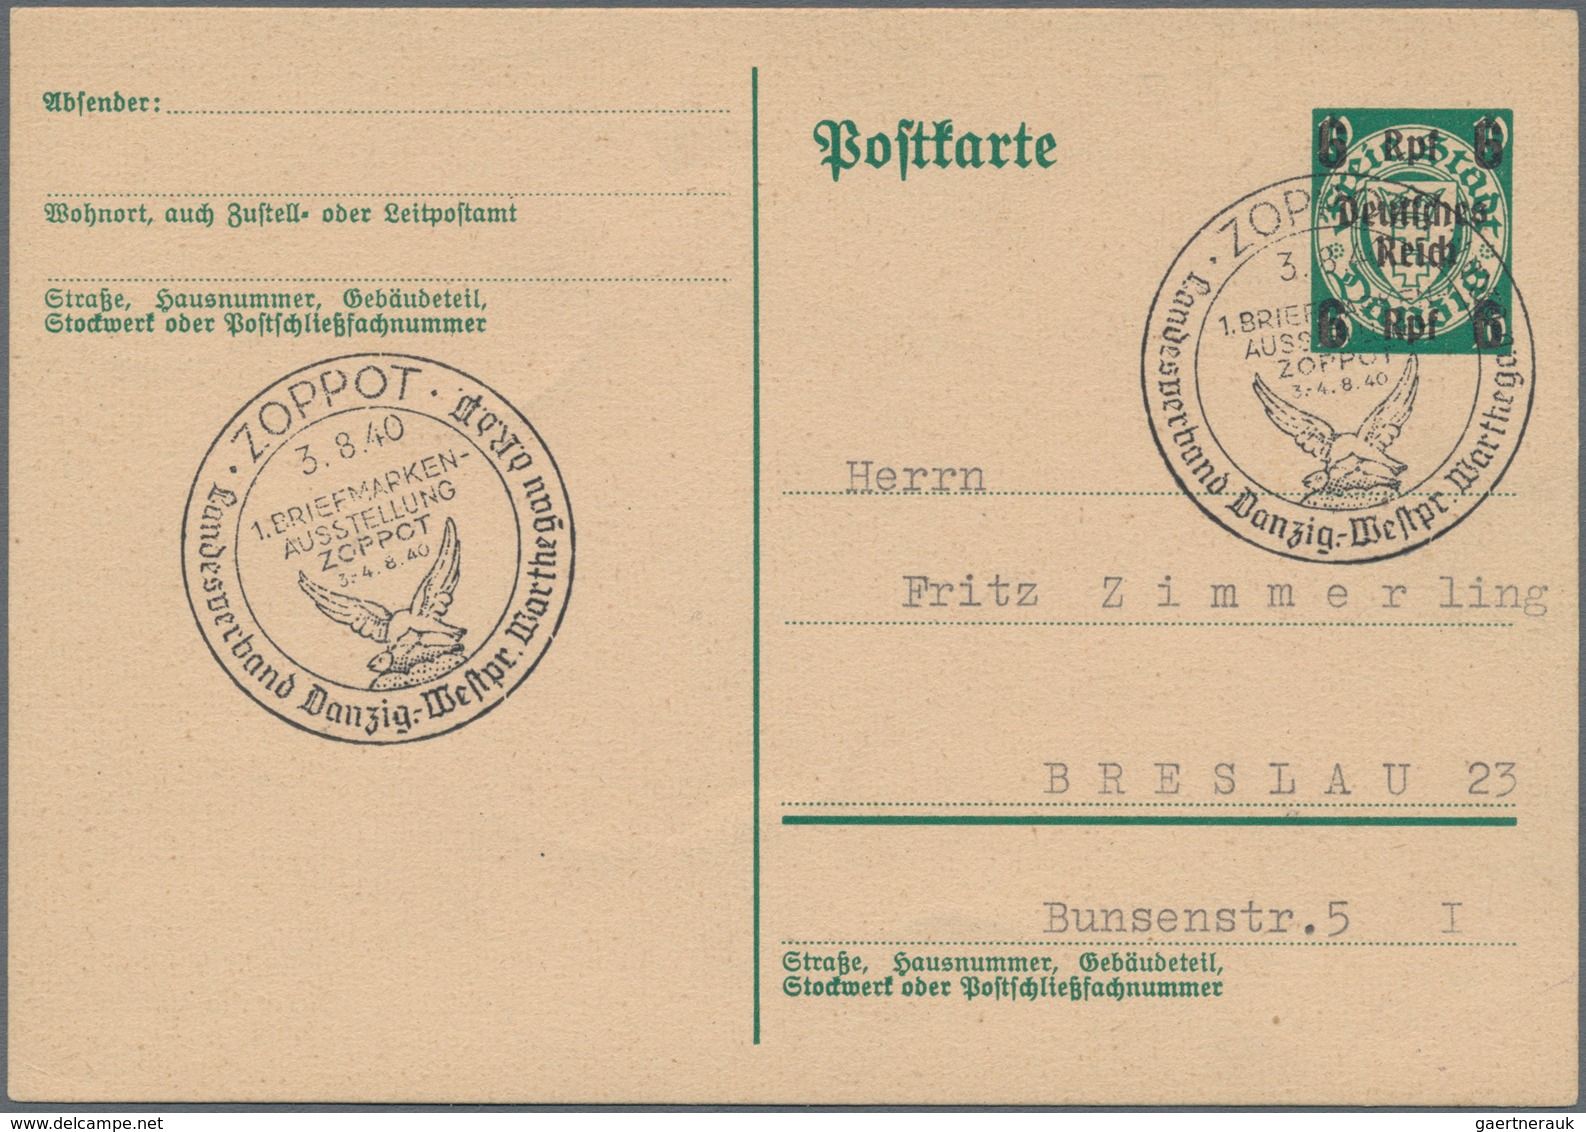 Deutsches Reich - Ganzsachen: 1939/40, fünf gebrauchte Ganzsachenpostkarten Wst. Wappen von Danzig m